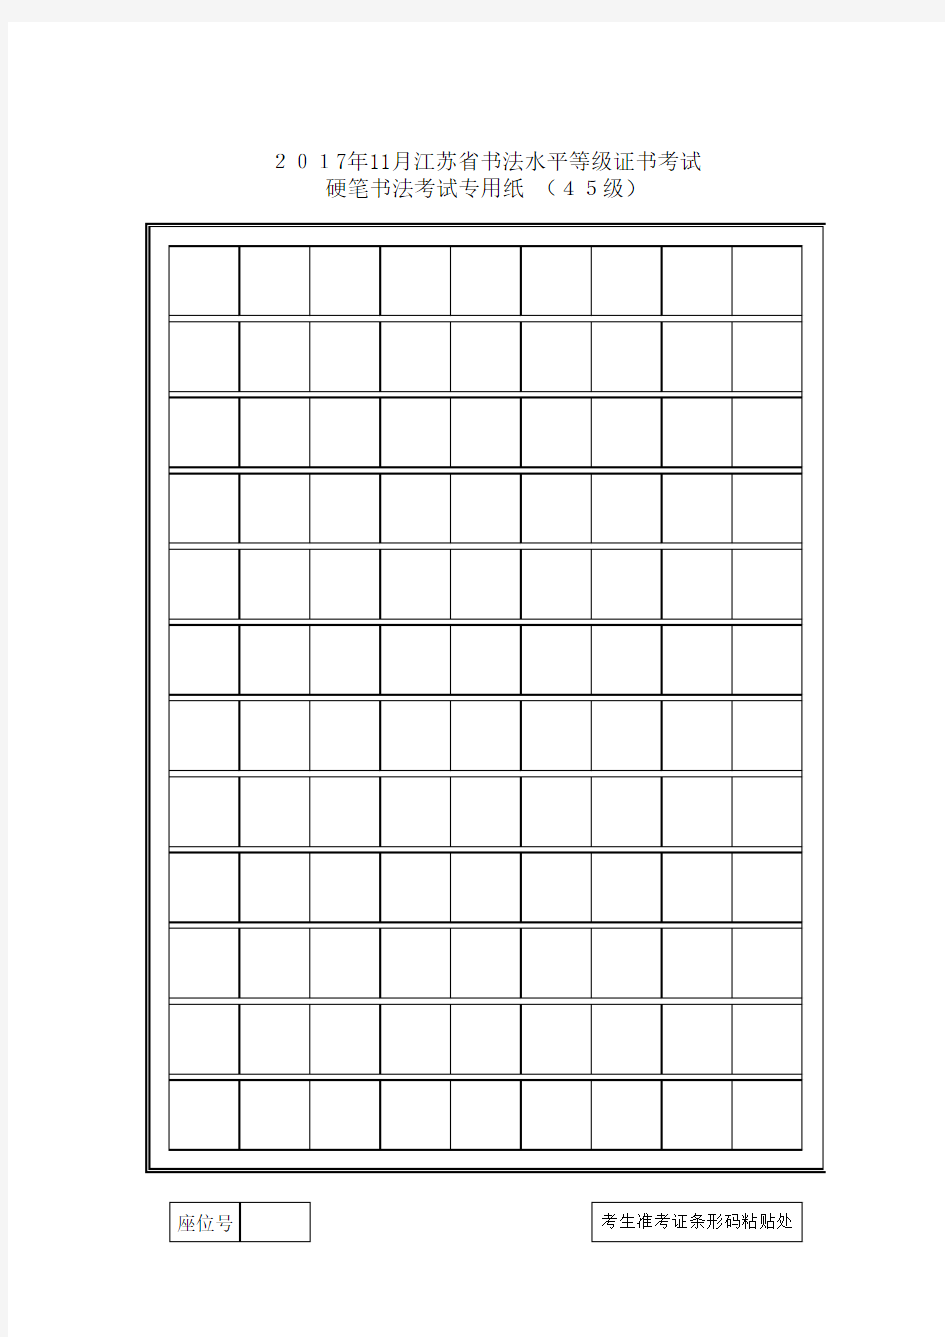 江苏省硬笔书法考试专用纸(1-10级)